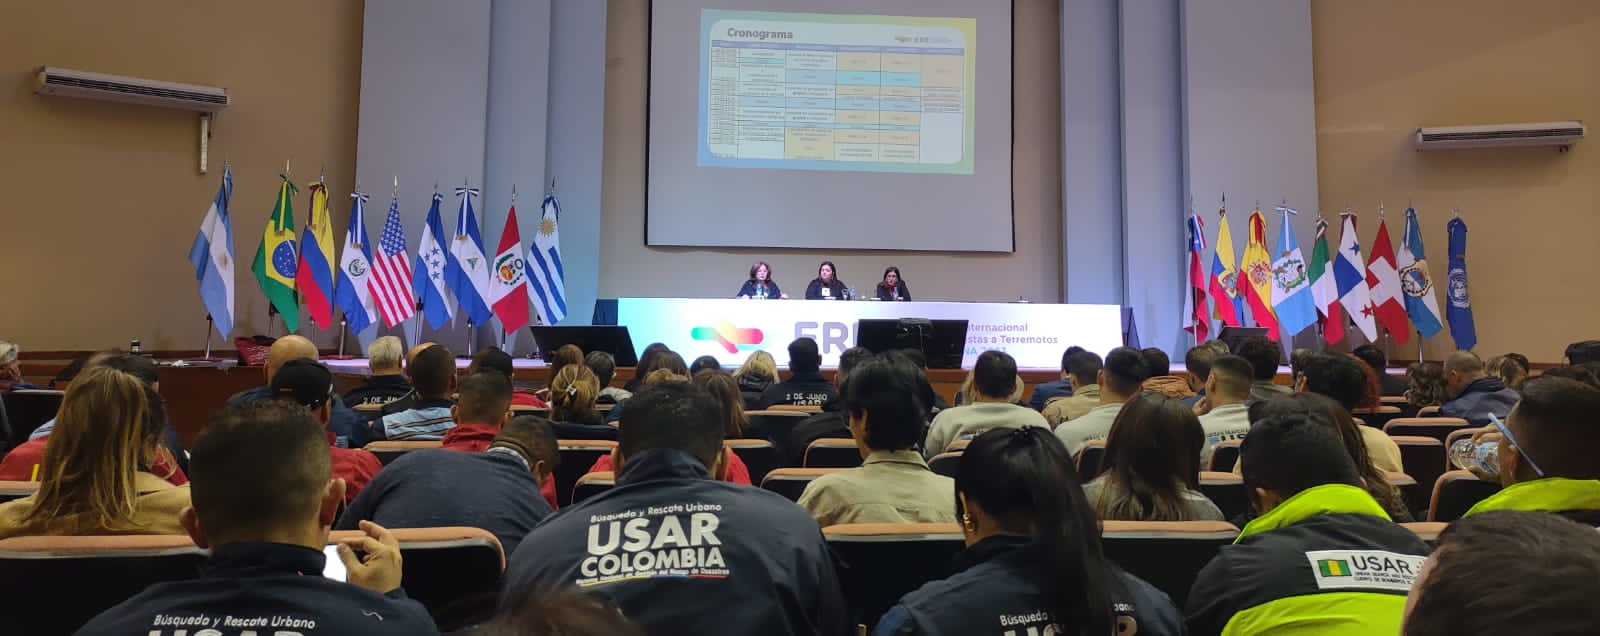 Grupo USAR COL-1 presente en ERE 2023 realizado en Argentina